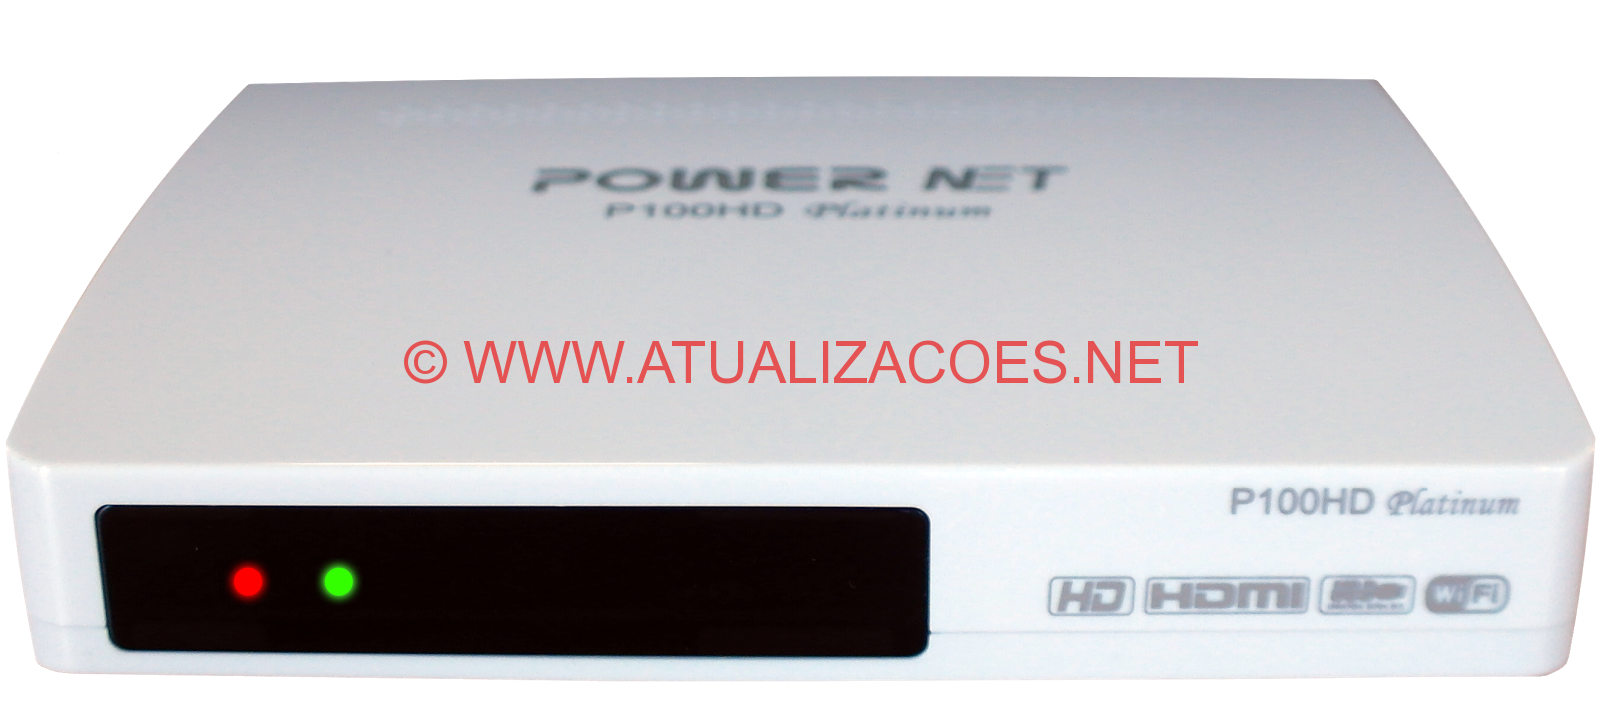 Powernet-P100HD-Platinum-RECOVERY-COMPLETO Powernet P100HD Platinum ATUALIZAÇAO  22-04-15